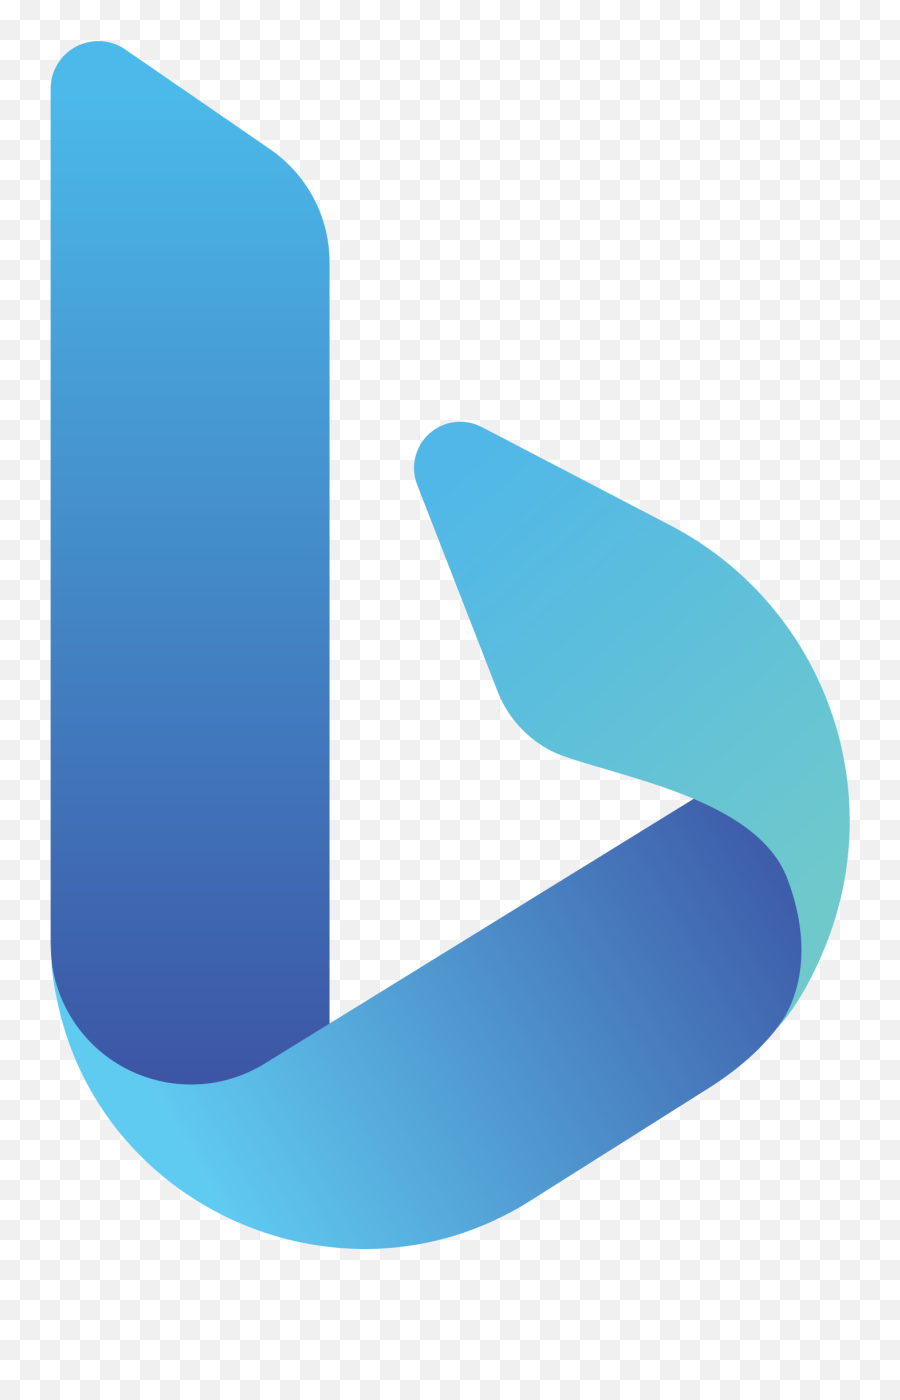 Bing Logo - Microsoft Bing Logo Png,Bing Maps Icon